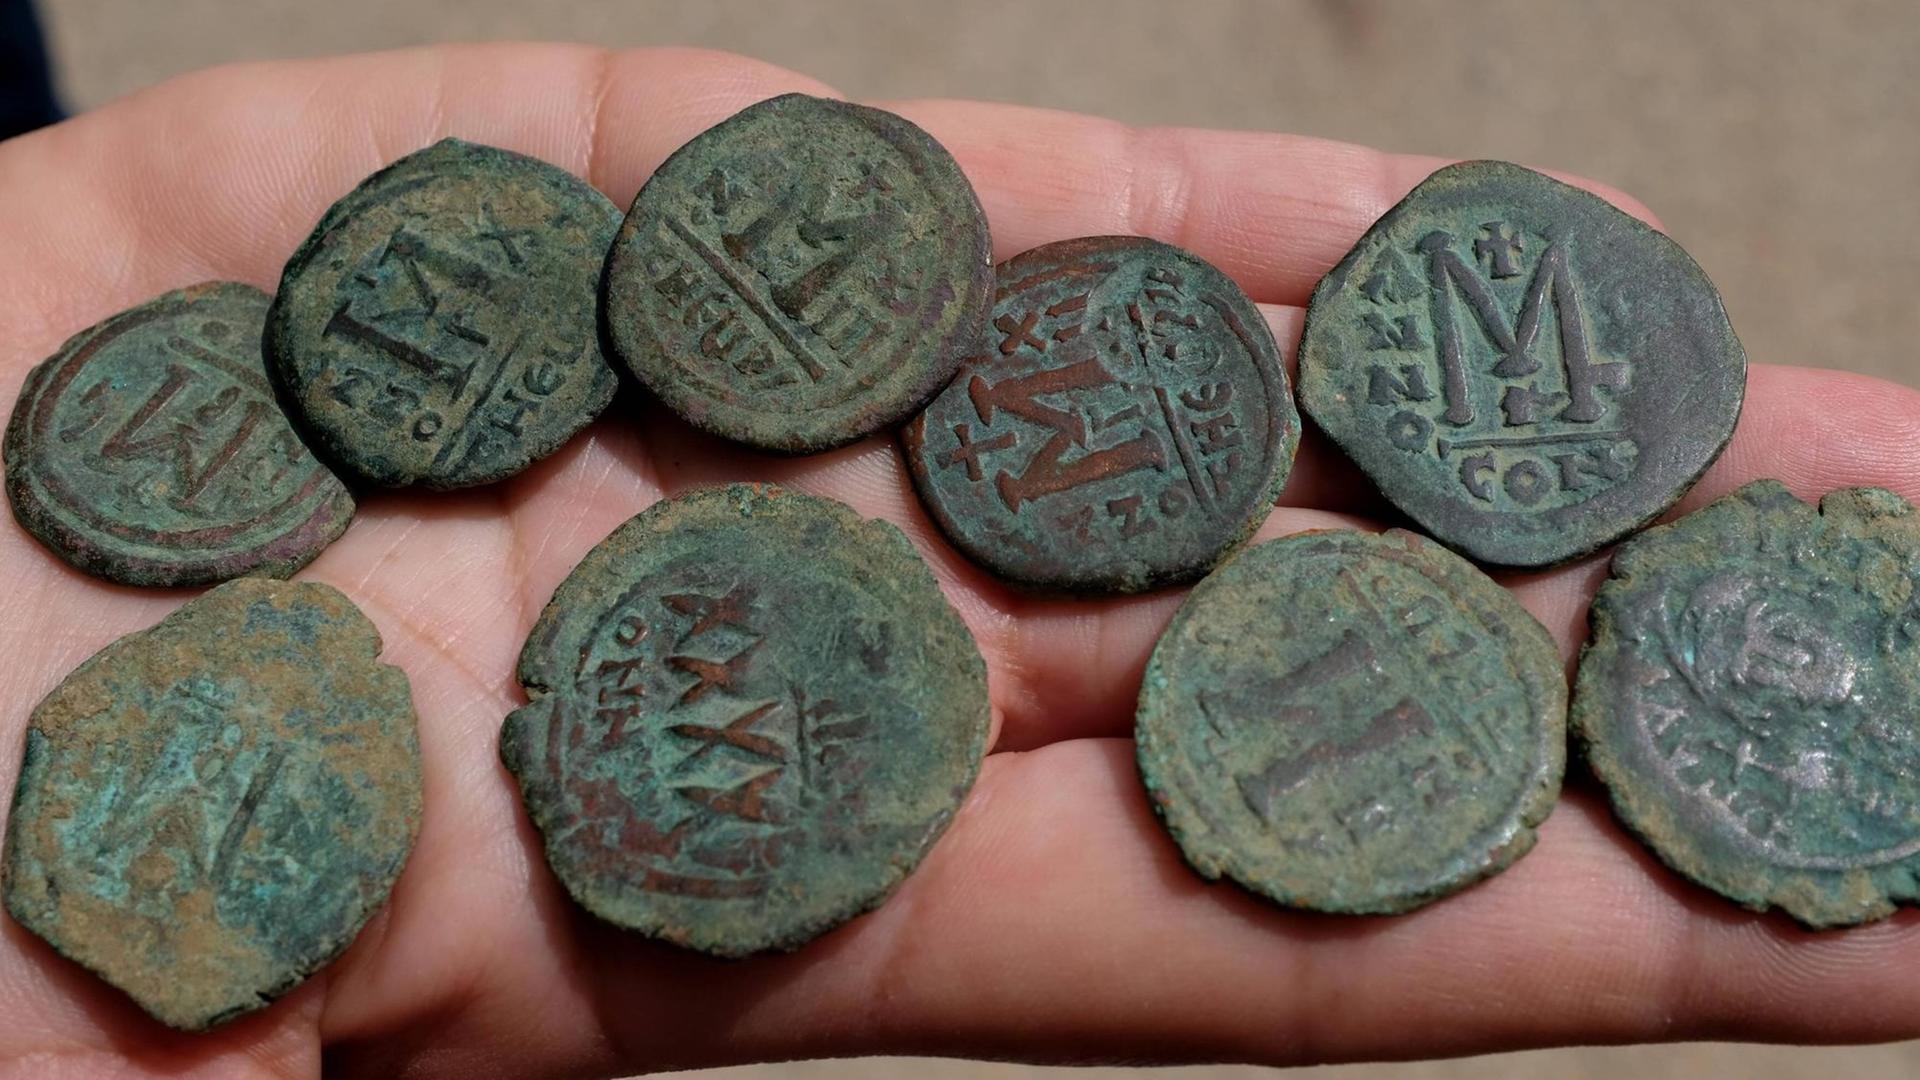 Neun antike Münzen liegen auf einer Handfläche.